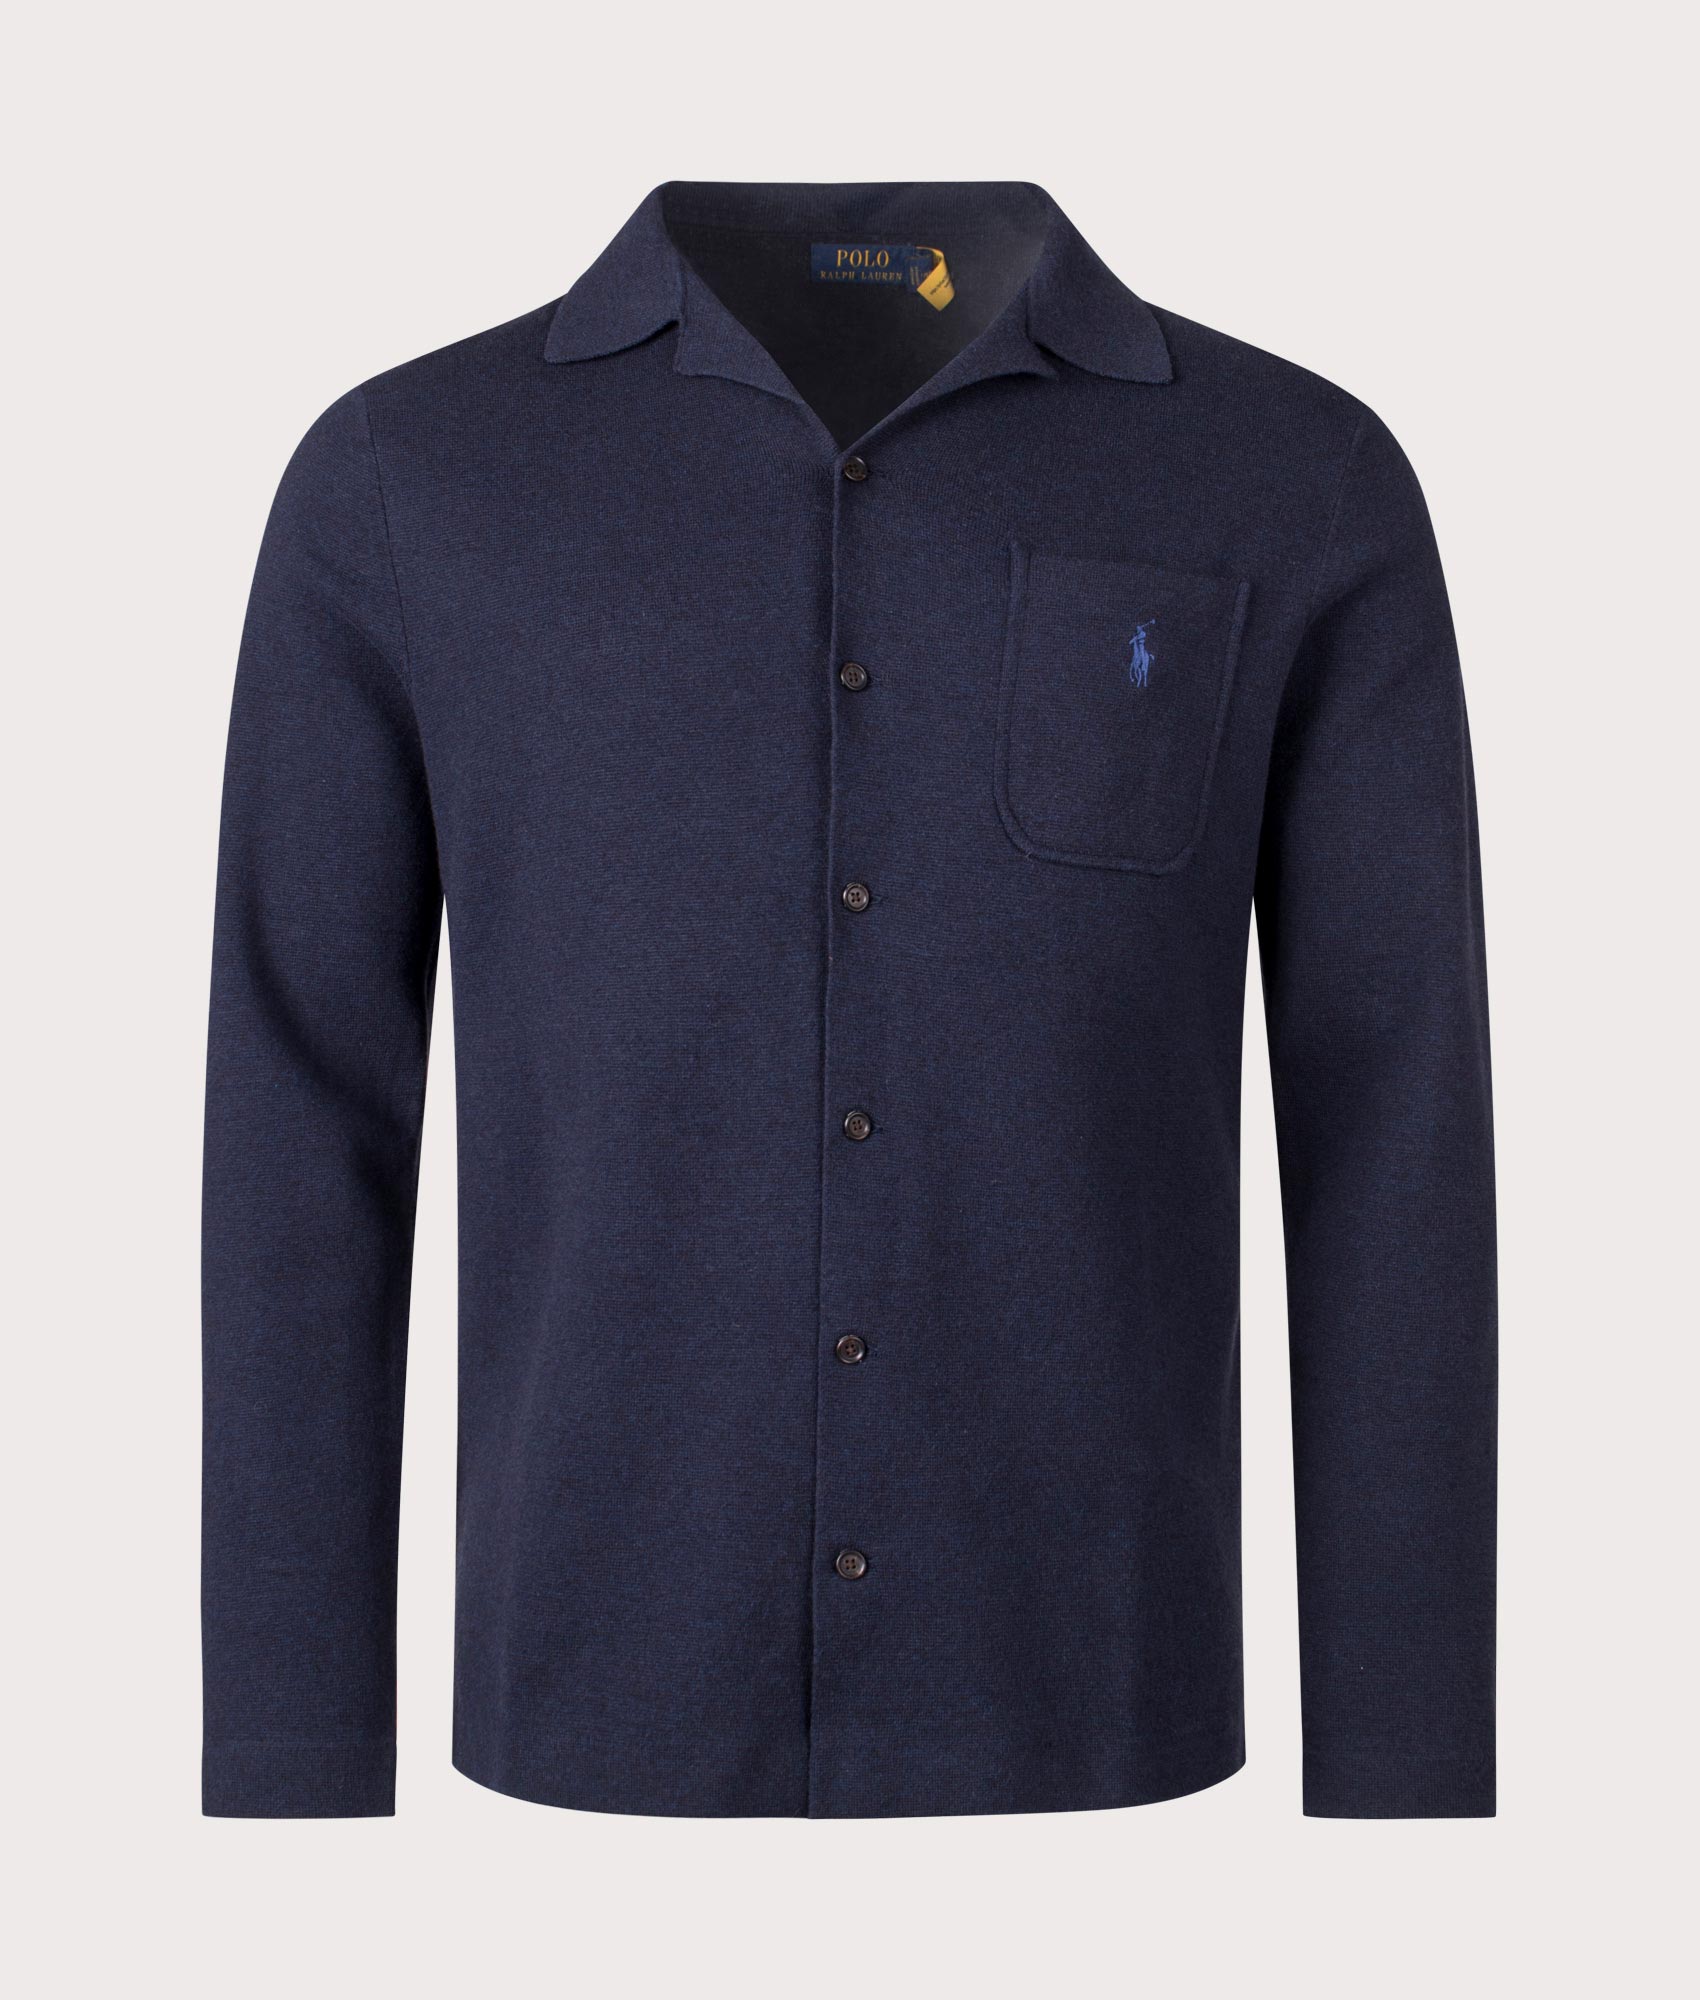 Polo Ralph Lauren Mens Cotton Mesh Shirt - Colour: 001 Navy Heather - Size: Large